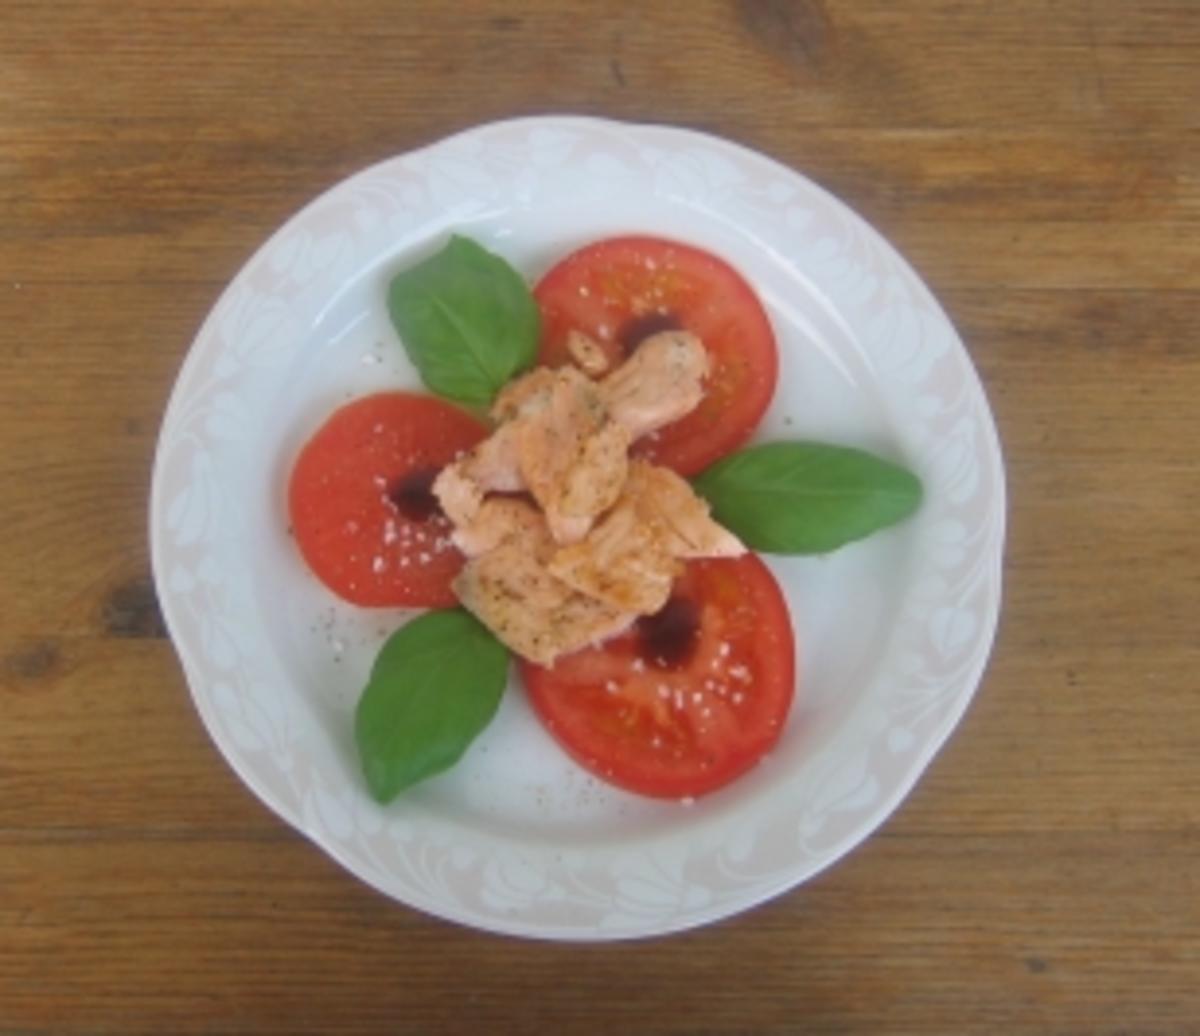 Tomaten mit feinen Lachsstreifen - Rezept